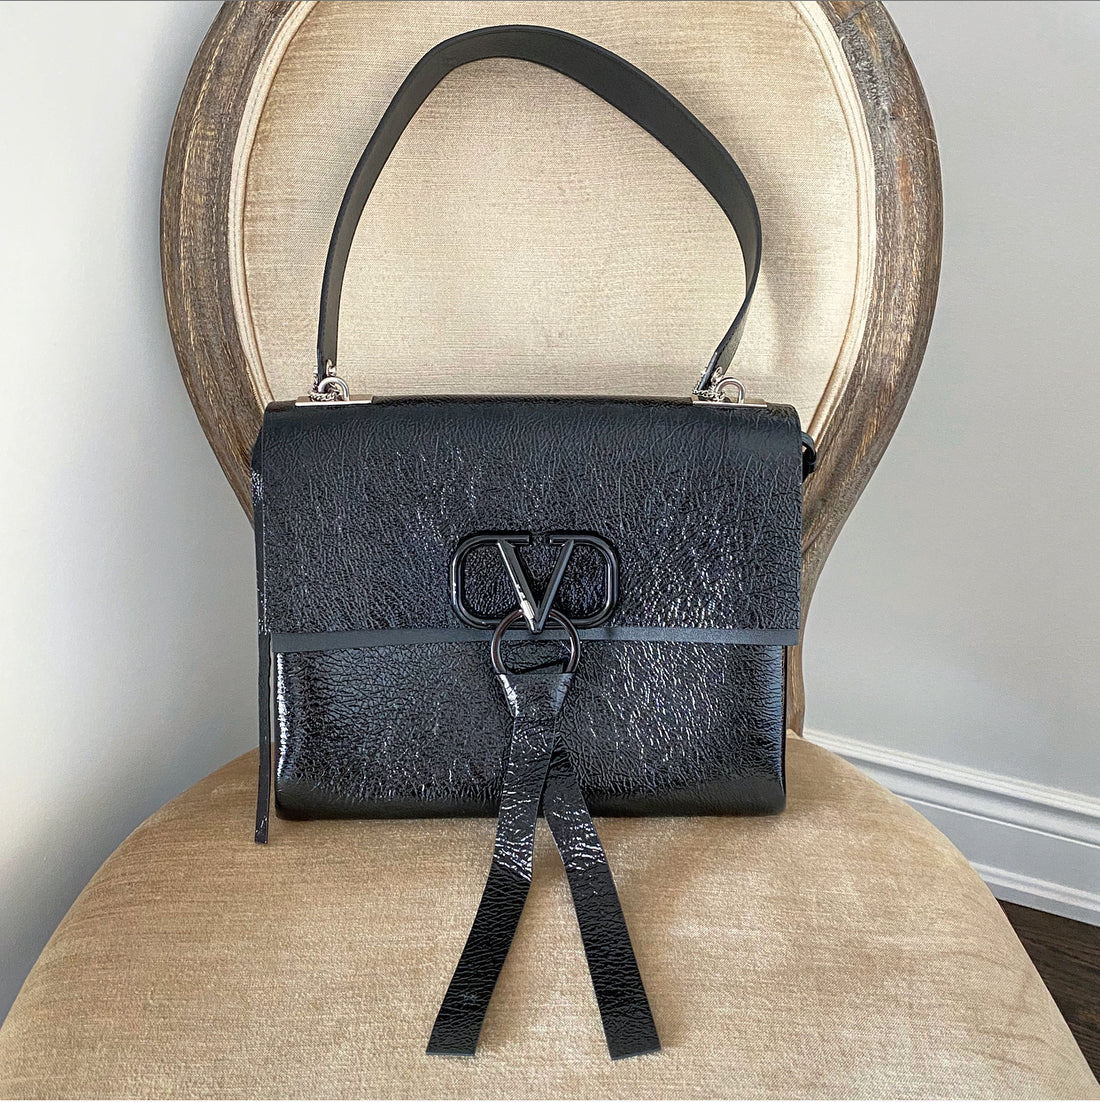 Valentino Vring Naplak Black Patent Shoulder Bag – I MISS YOU VINTAGE